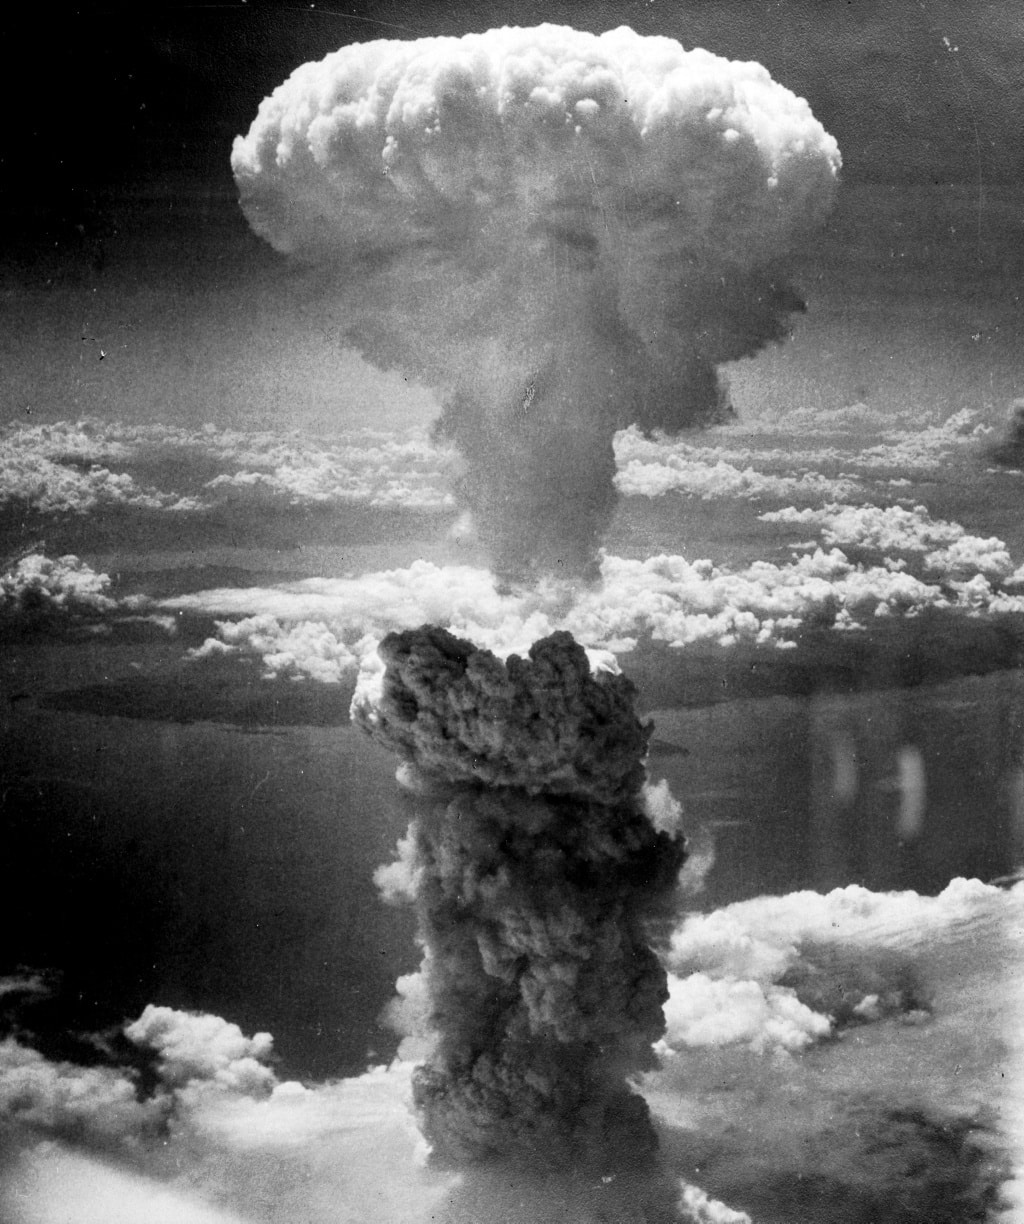 Tan solo 100 armas nucleares bastarían para causar una catástrofe global